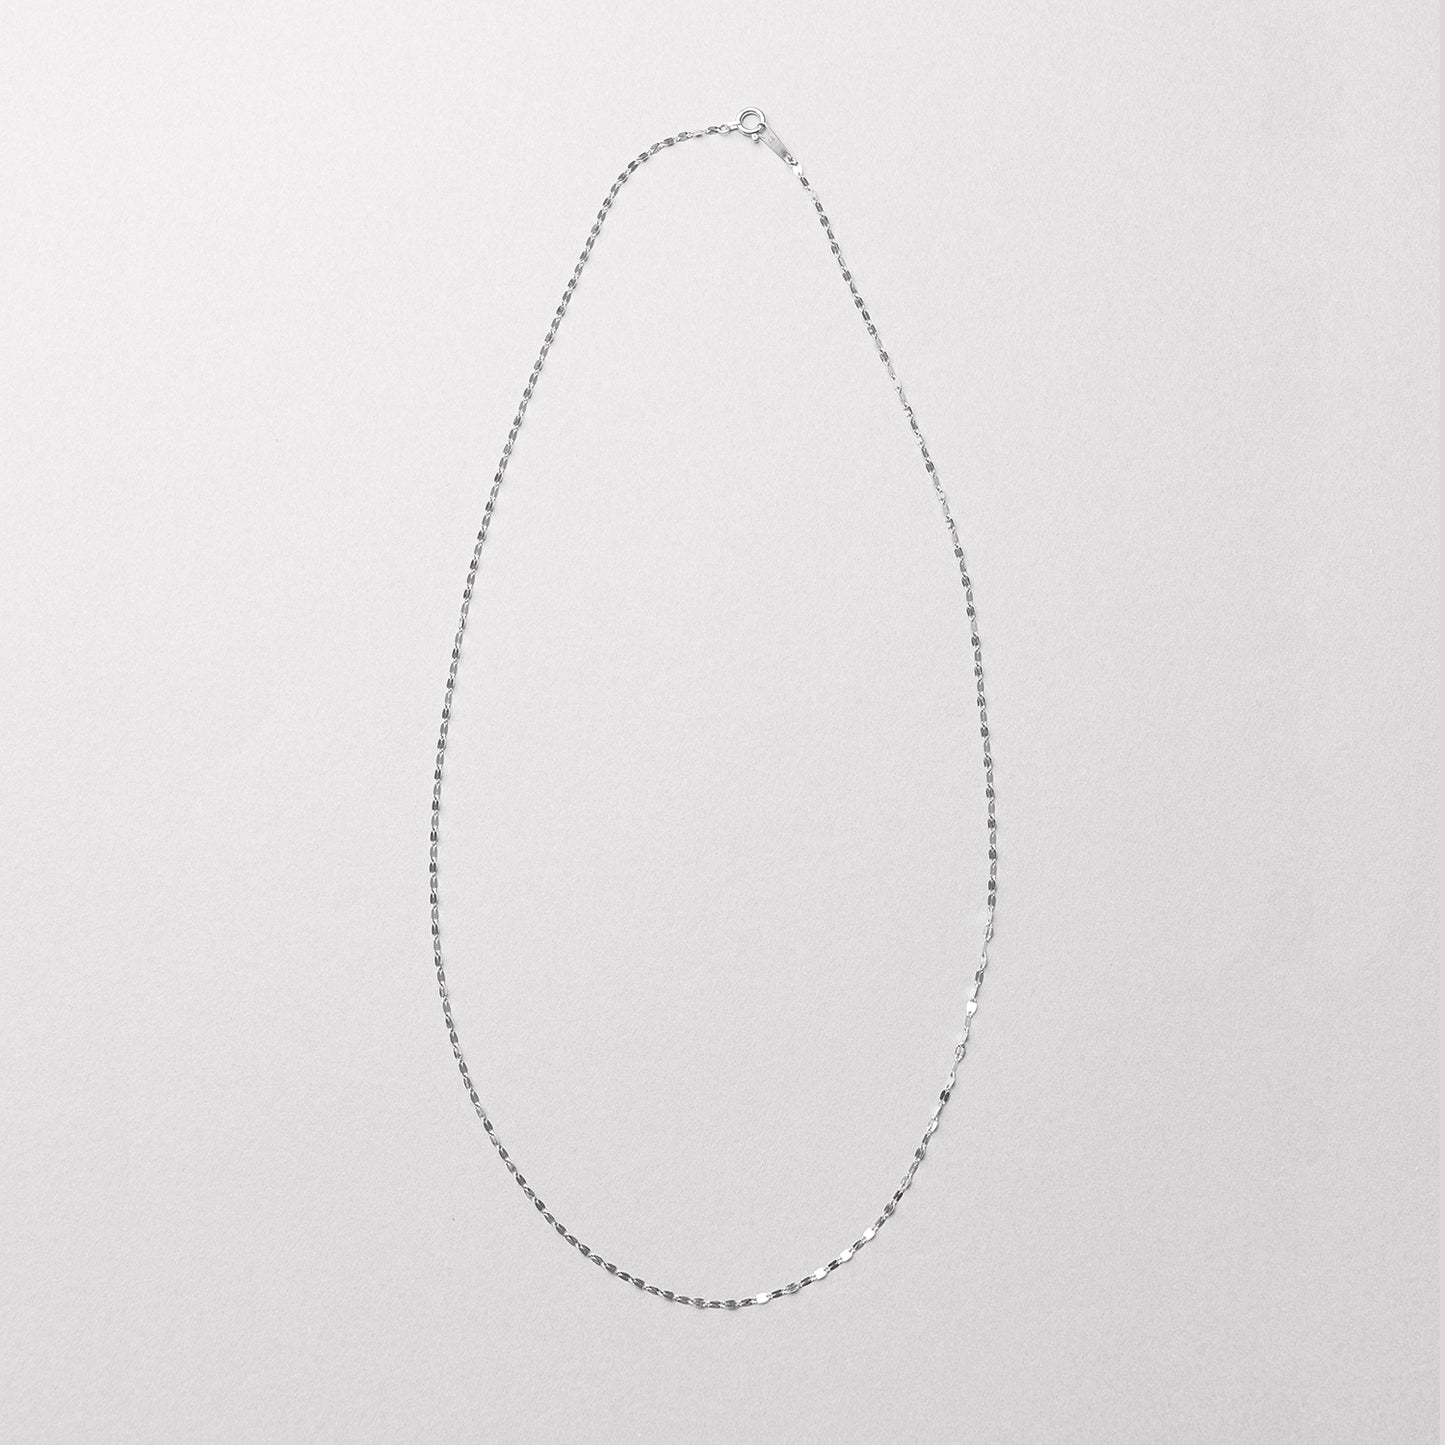 PT Chain Necklace｜96-1229 (45㎝)